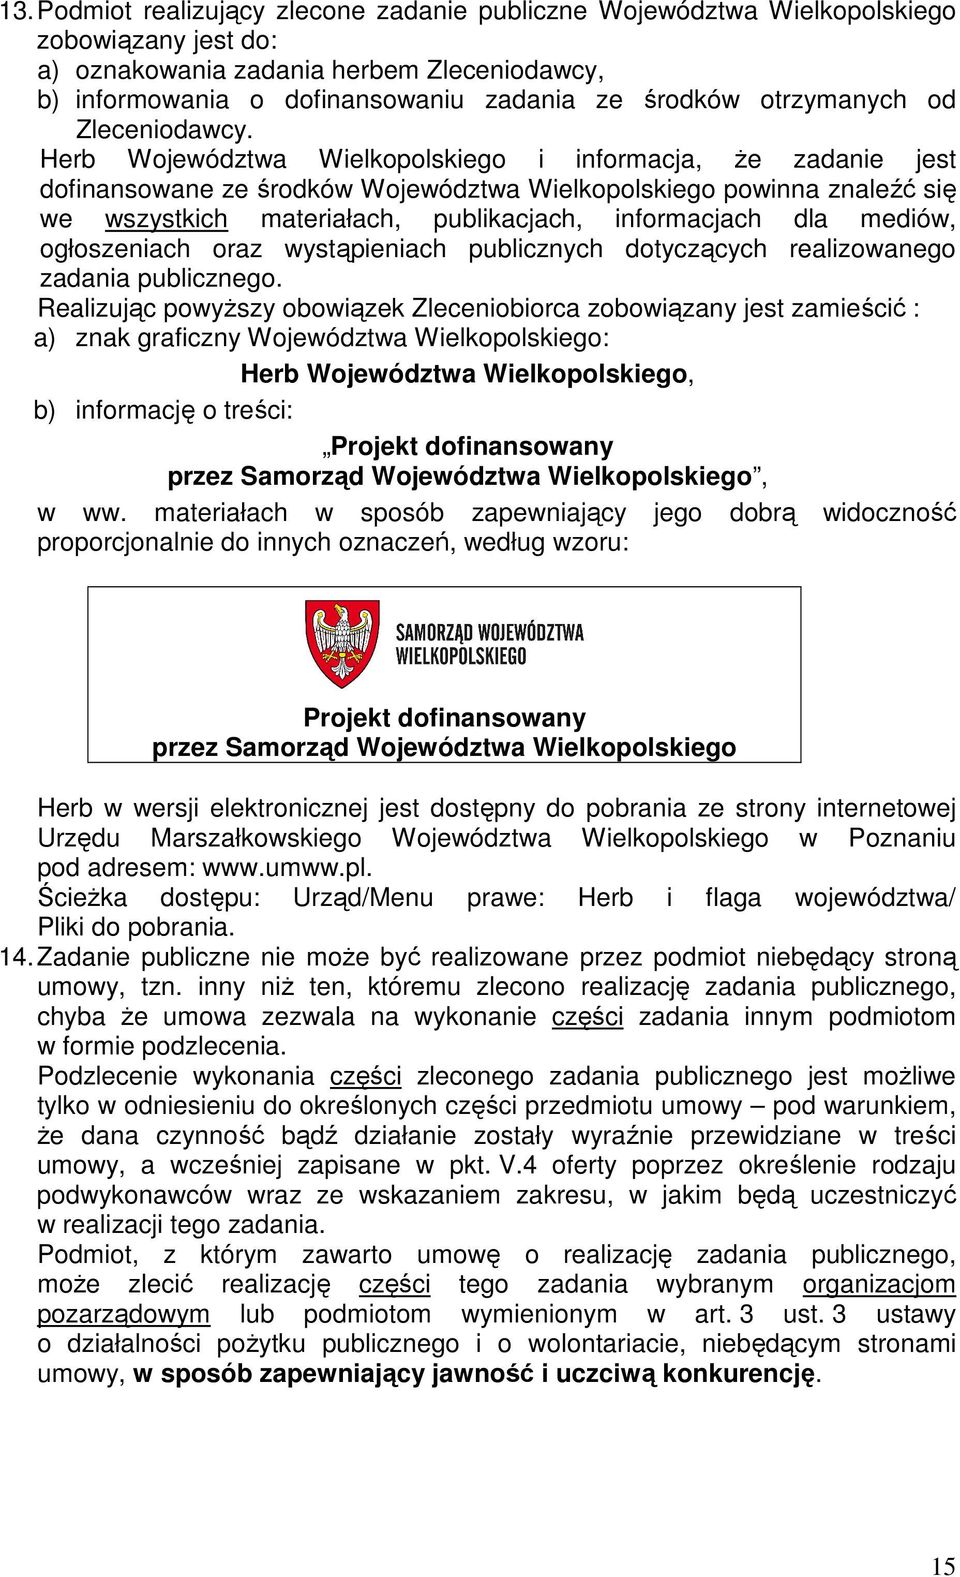 Herb Województwa Wielkopolskiego i informacja, Ŝe zadanie jest dofinansowane ze środków Województwa Wielkopolskiego powinna znaleźć się we wszystkich materiałach, publikacjach, informacjach dla